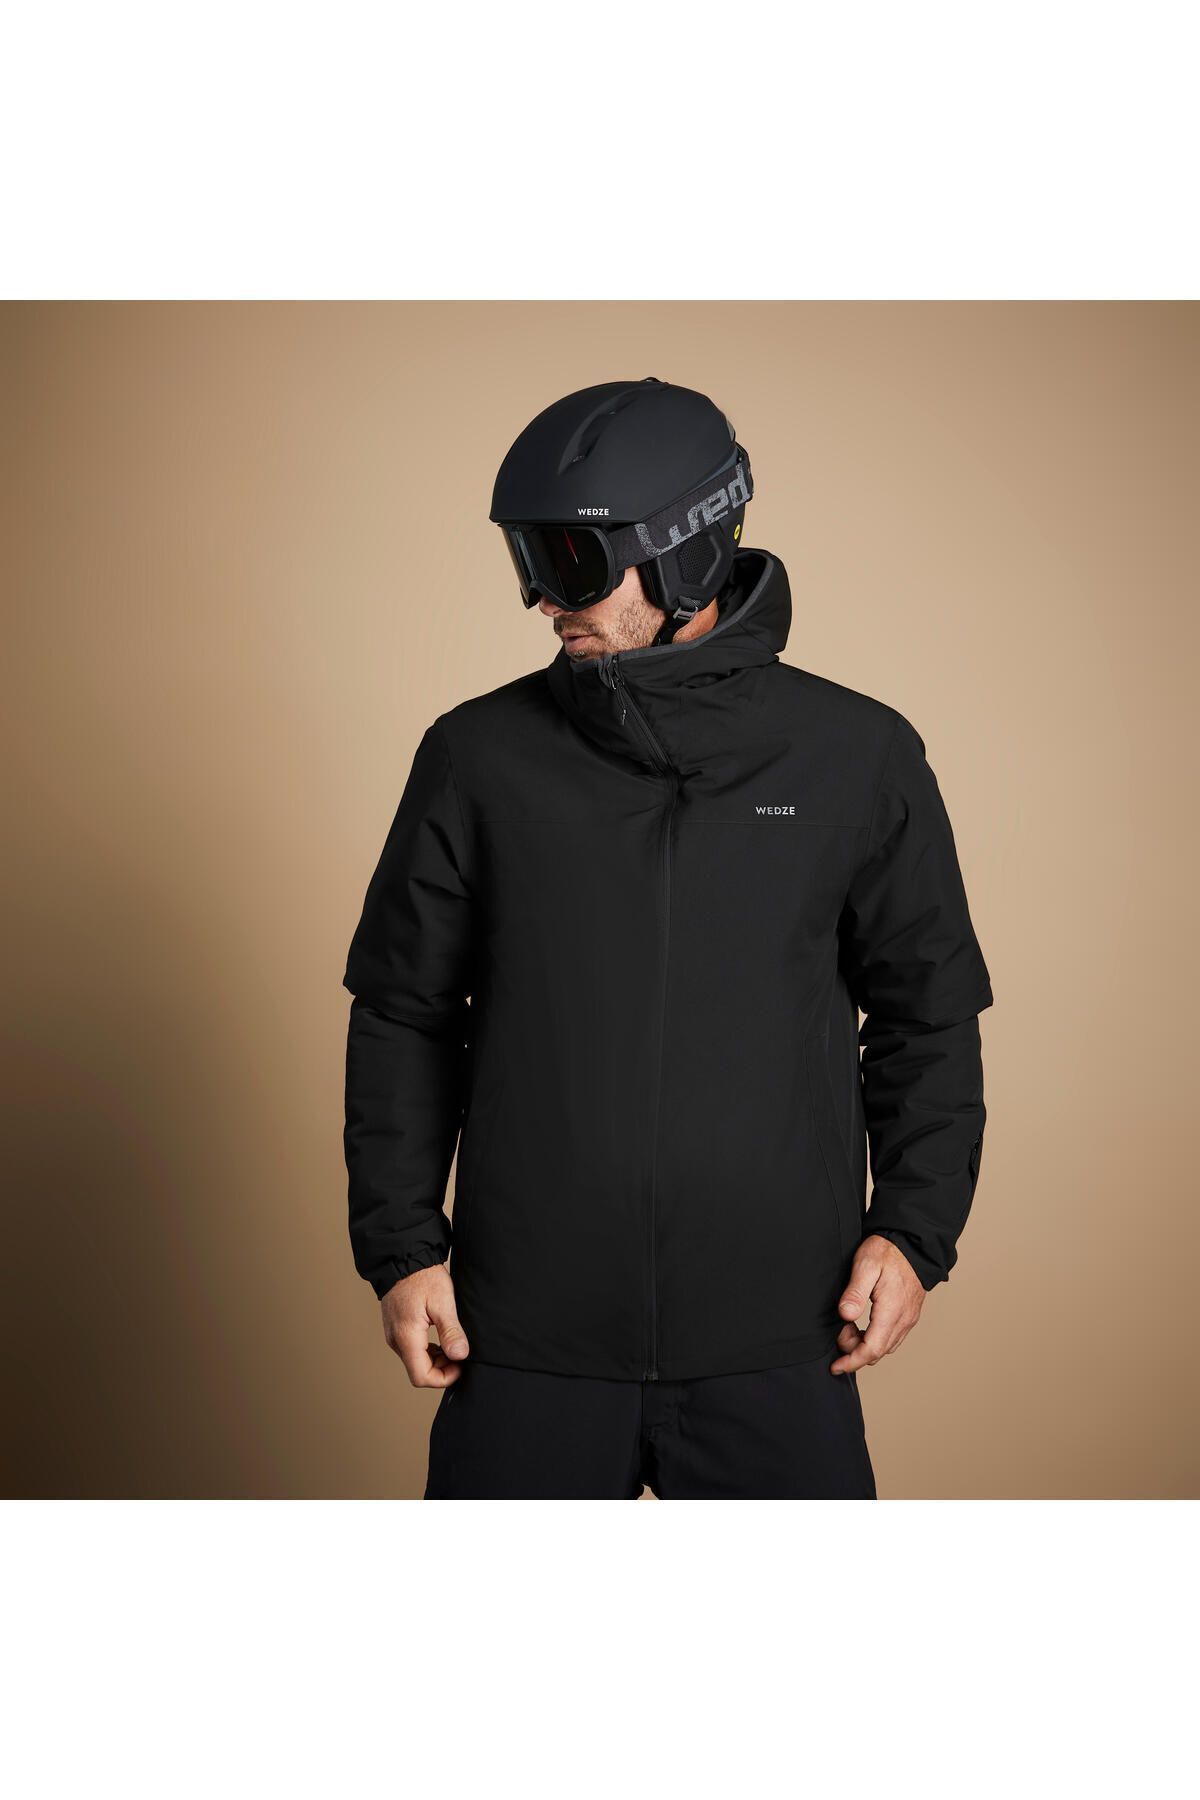 Мужская лыжная куртка Decathlon — черная — 100 308435